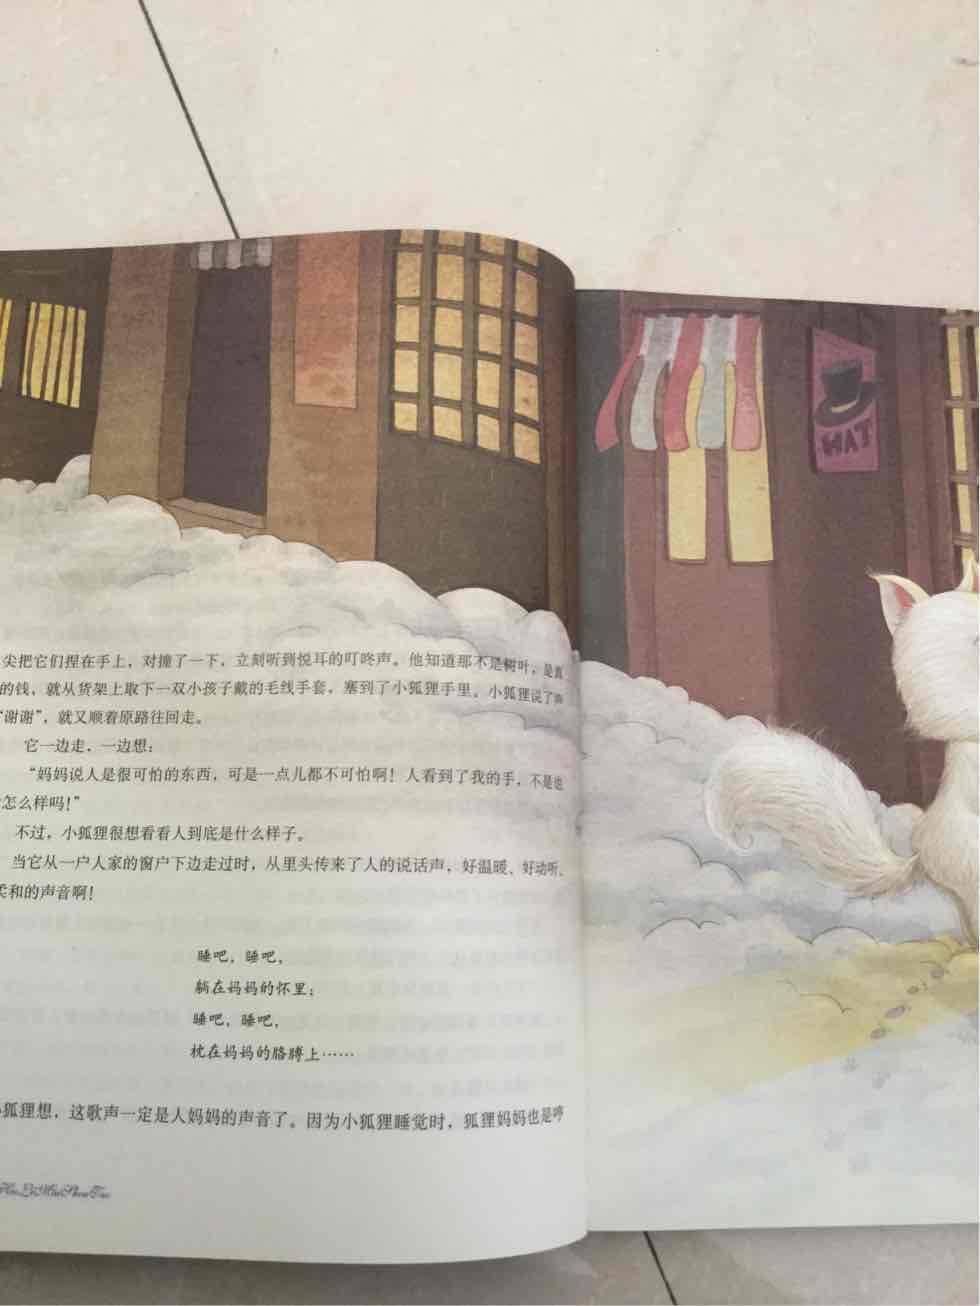 作者号称日本的安徒生、屯着、娃娃大点接受的更好、一直可以看到上小学！